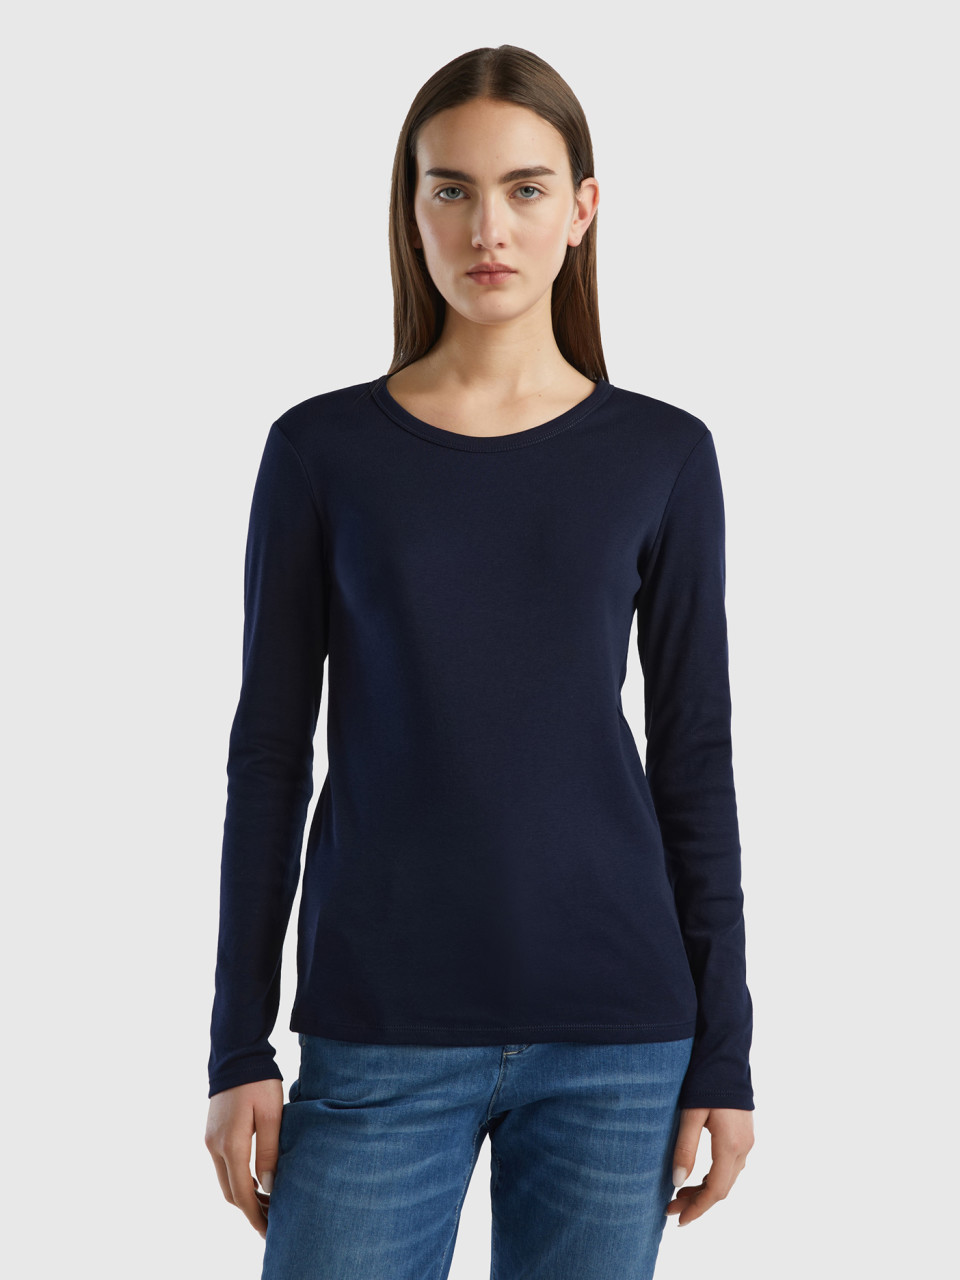 Benetton, Long Sleeve Pure Cotton T-shirt, Dark Blue, Women